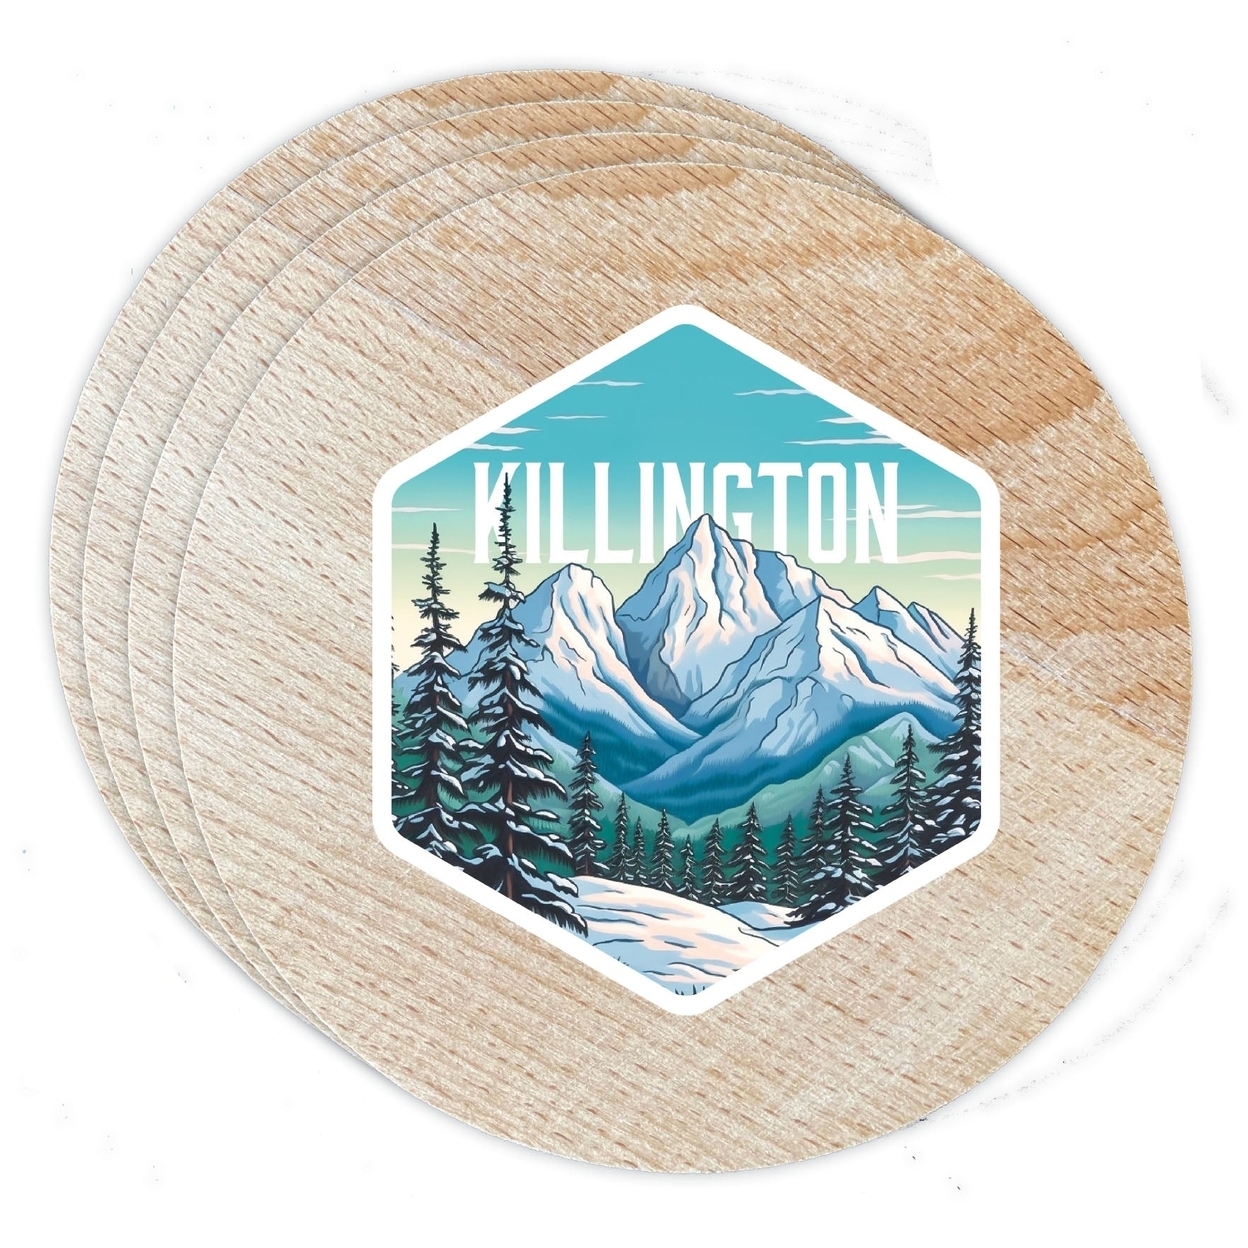 Killington Vermont Design C Souvenir Coaster Wooden 3.5 X 3.5-Inch 4 Pack